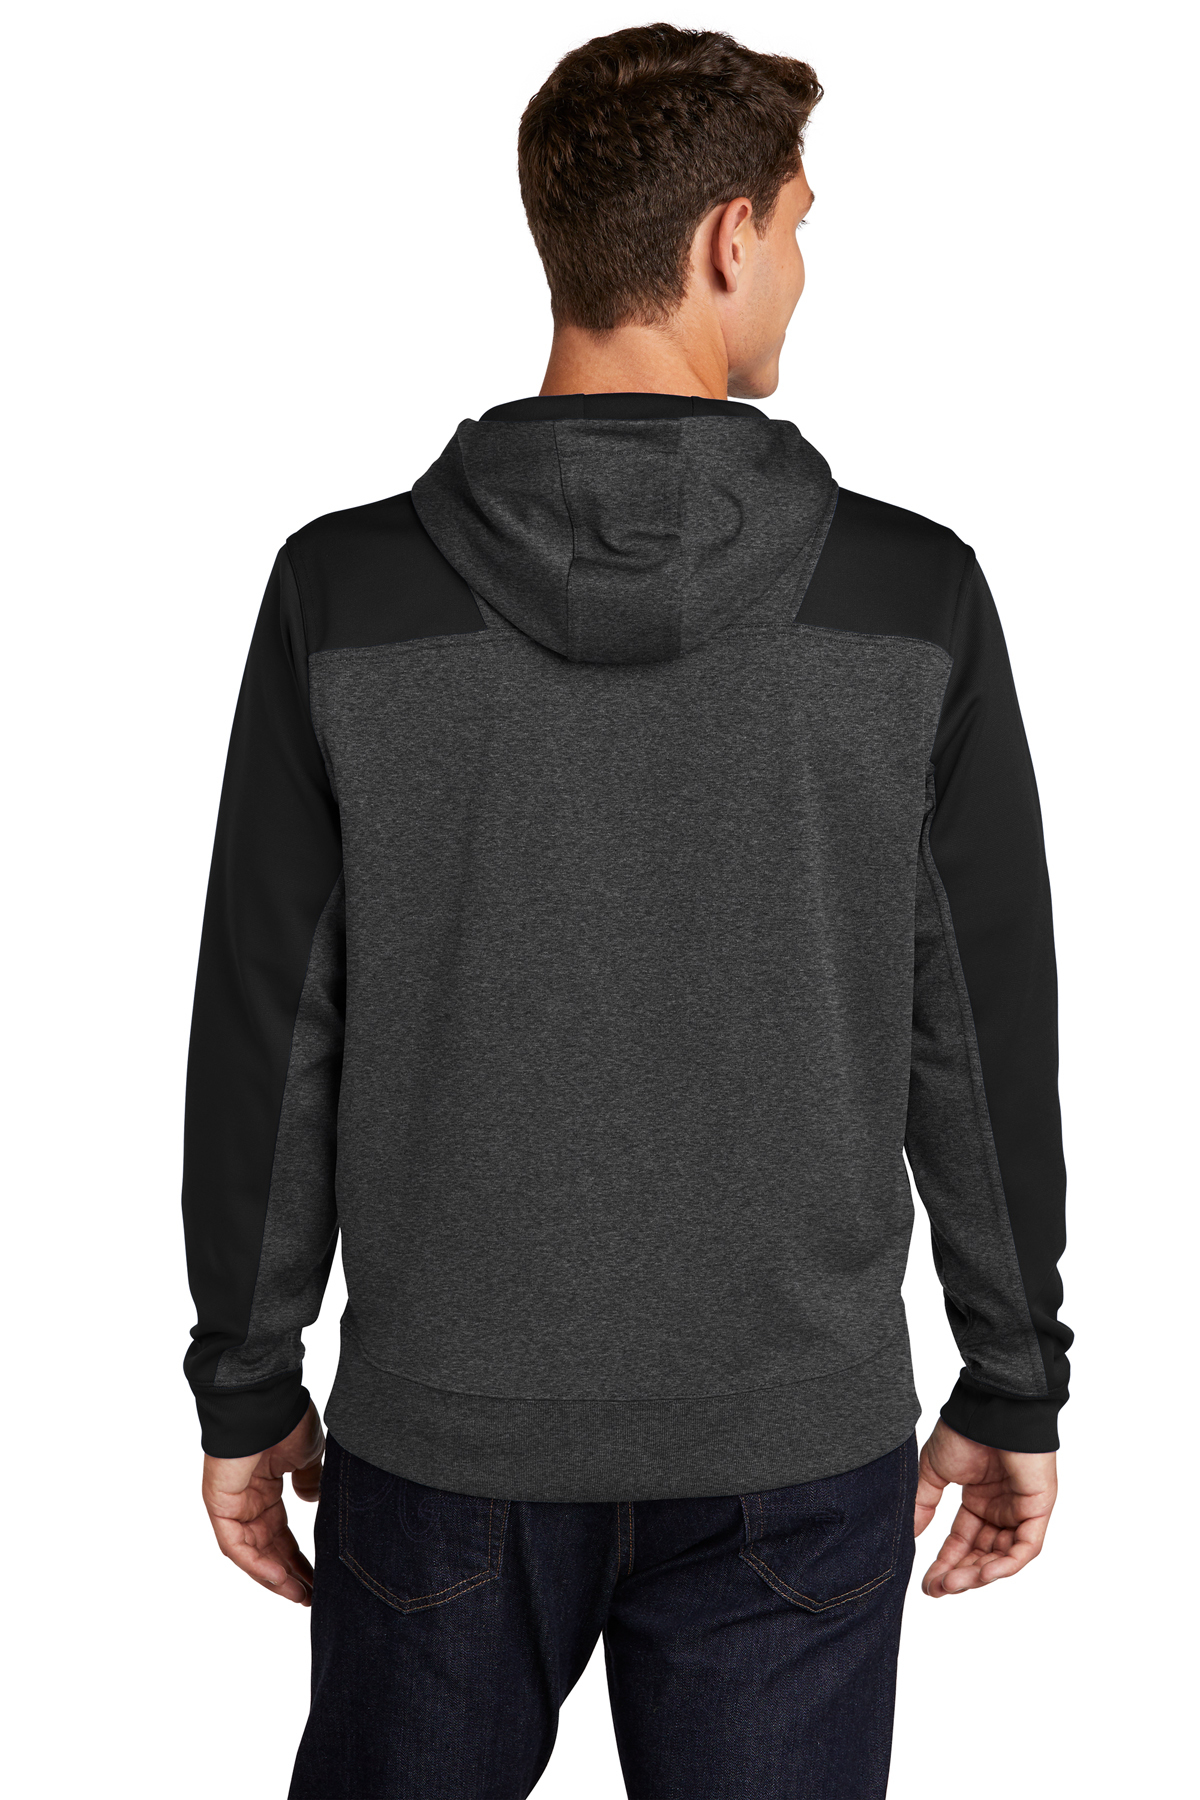 Sport-Tek Tech Fleece Colorblock 1/4-Zip Hooded Sweatshirt | Product ...